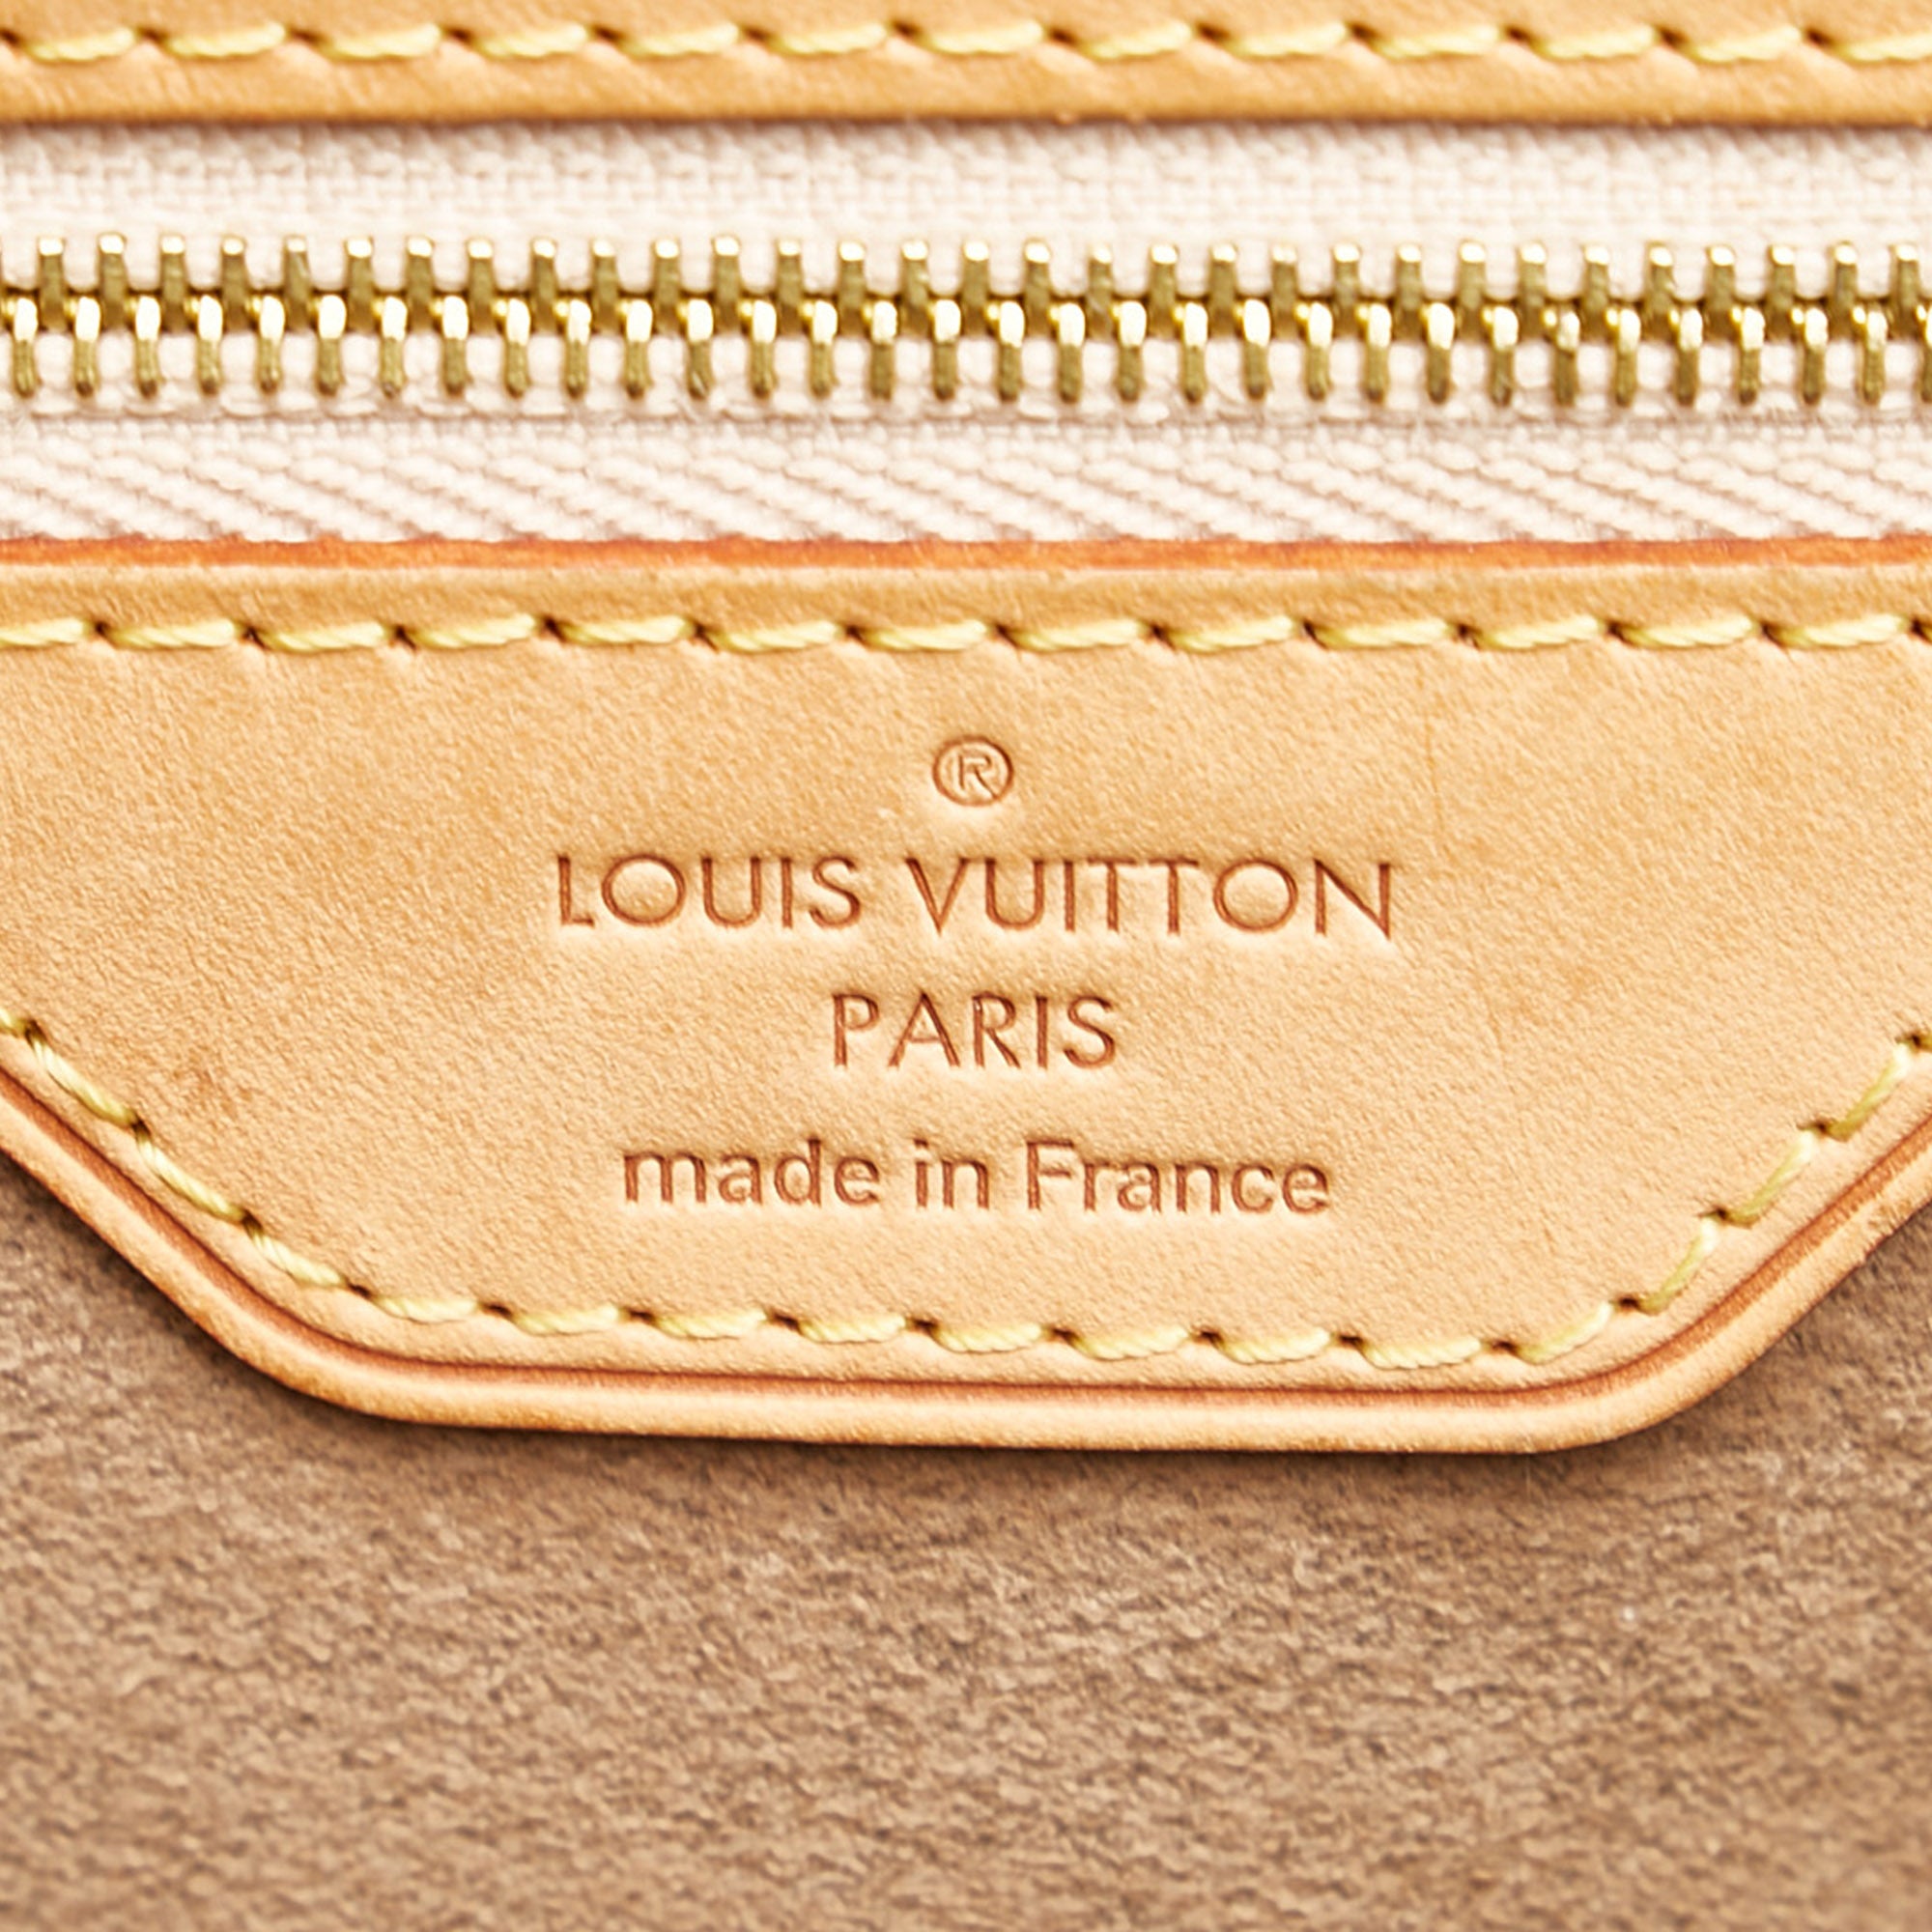 Authenticated Used Louis Vuitton Monogram Multicolore Annie GM M40304  Women's Shoulder Bag,Tote Bag Noir 